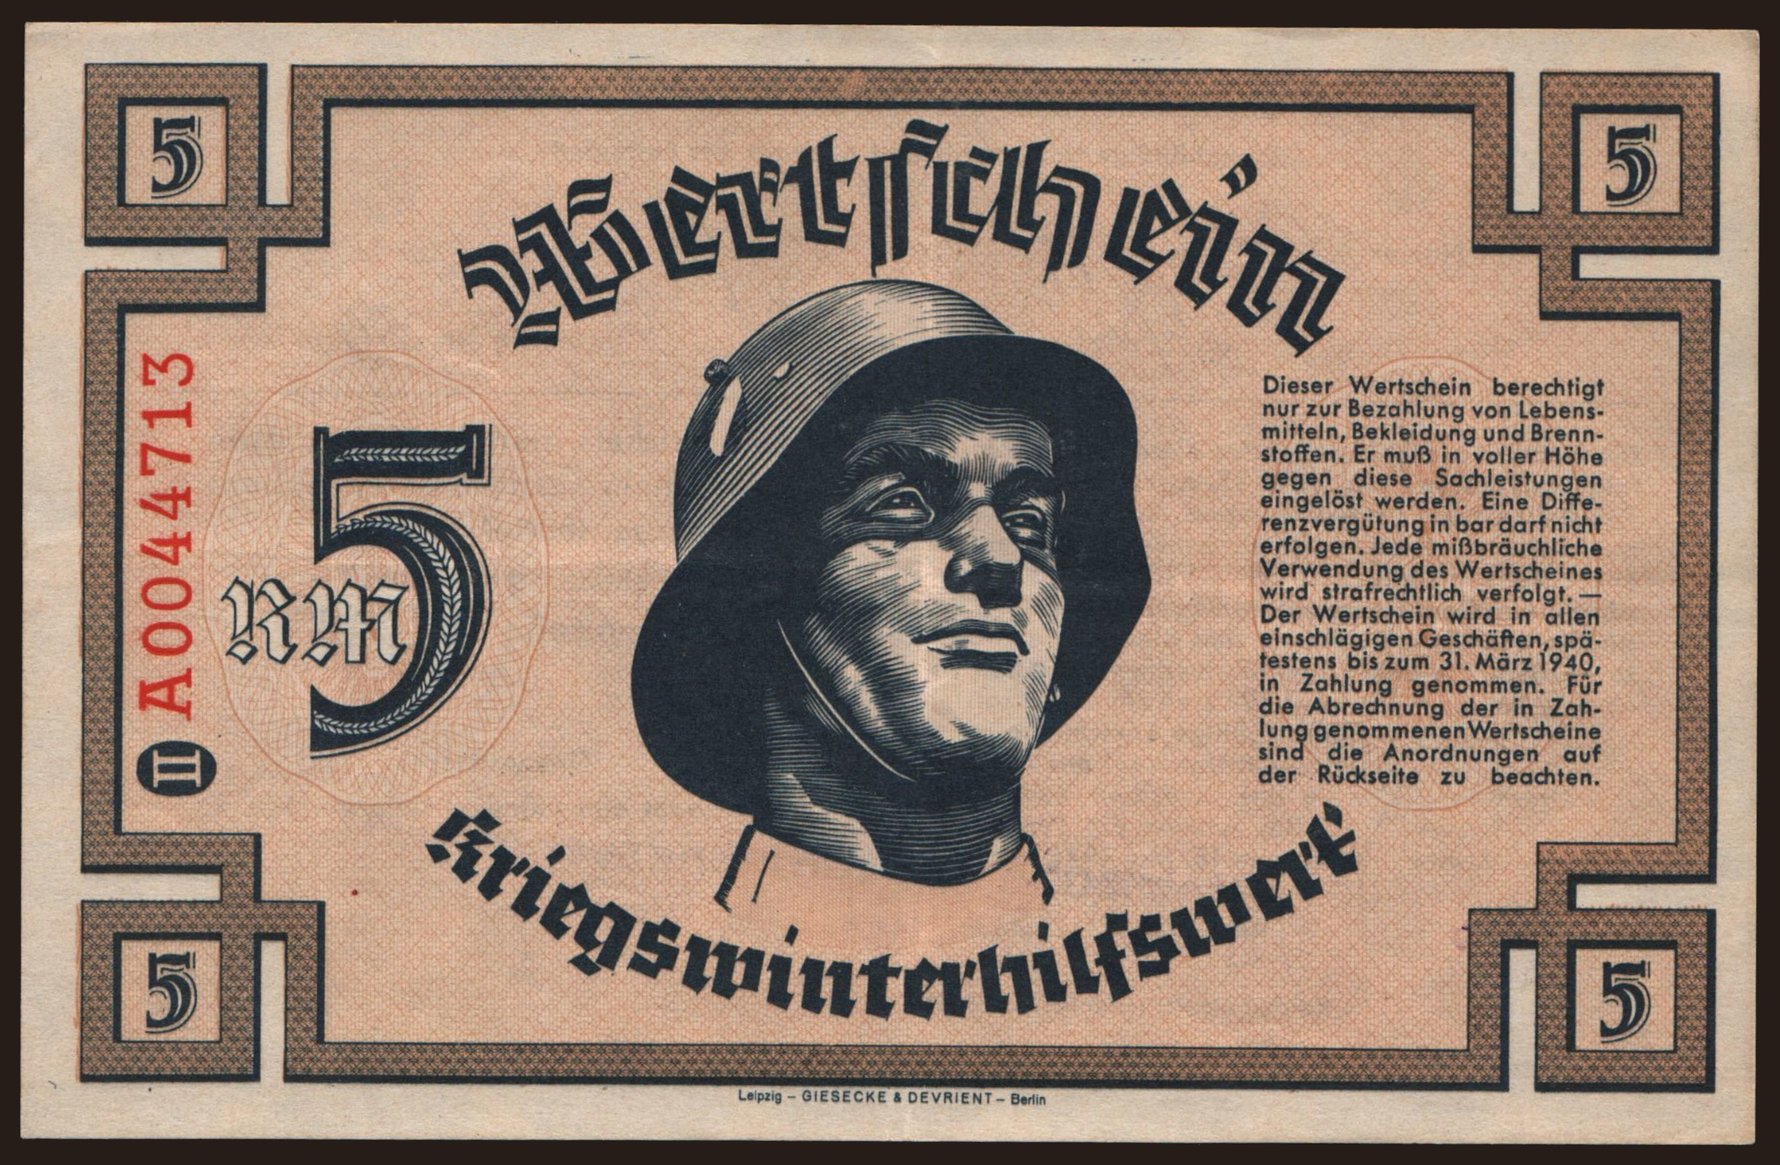 Winterhilfswerk, 5 Reichsmark, 1940